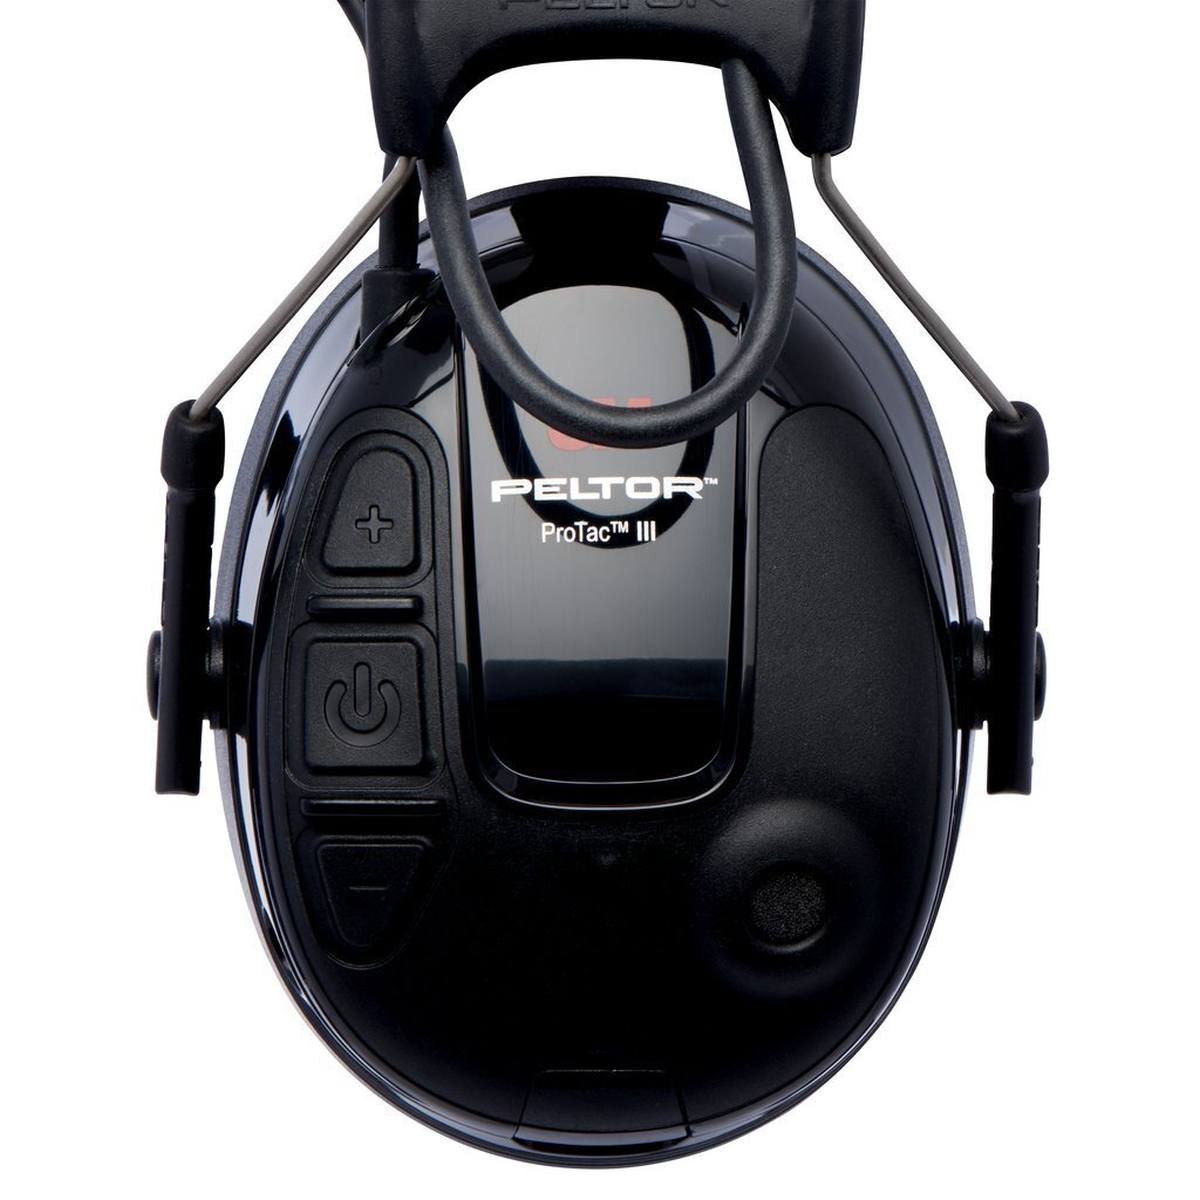 3M Peltor ProTac III Slim Gehörschutz-Headset, schwarz, Kopfbügel, mit aktiver, pegelabhängiger Dämmtechnologie zum Wahrnehmen von Umgebungsgeräuschen, SNR = 26 dB, schwarz